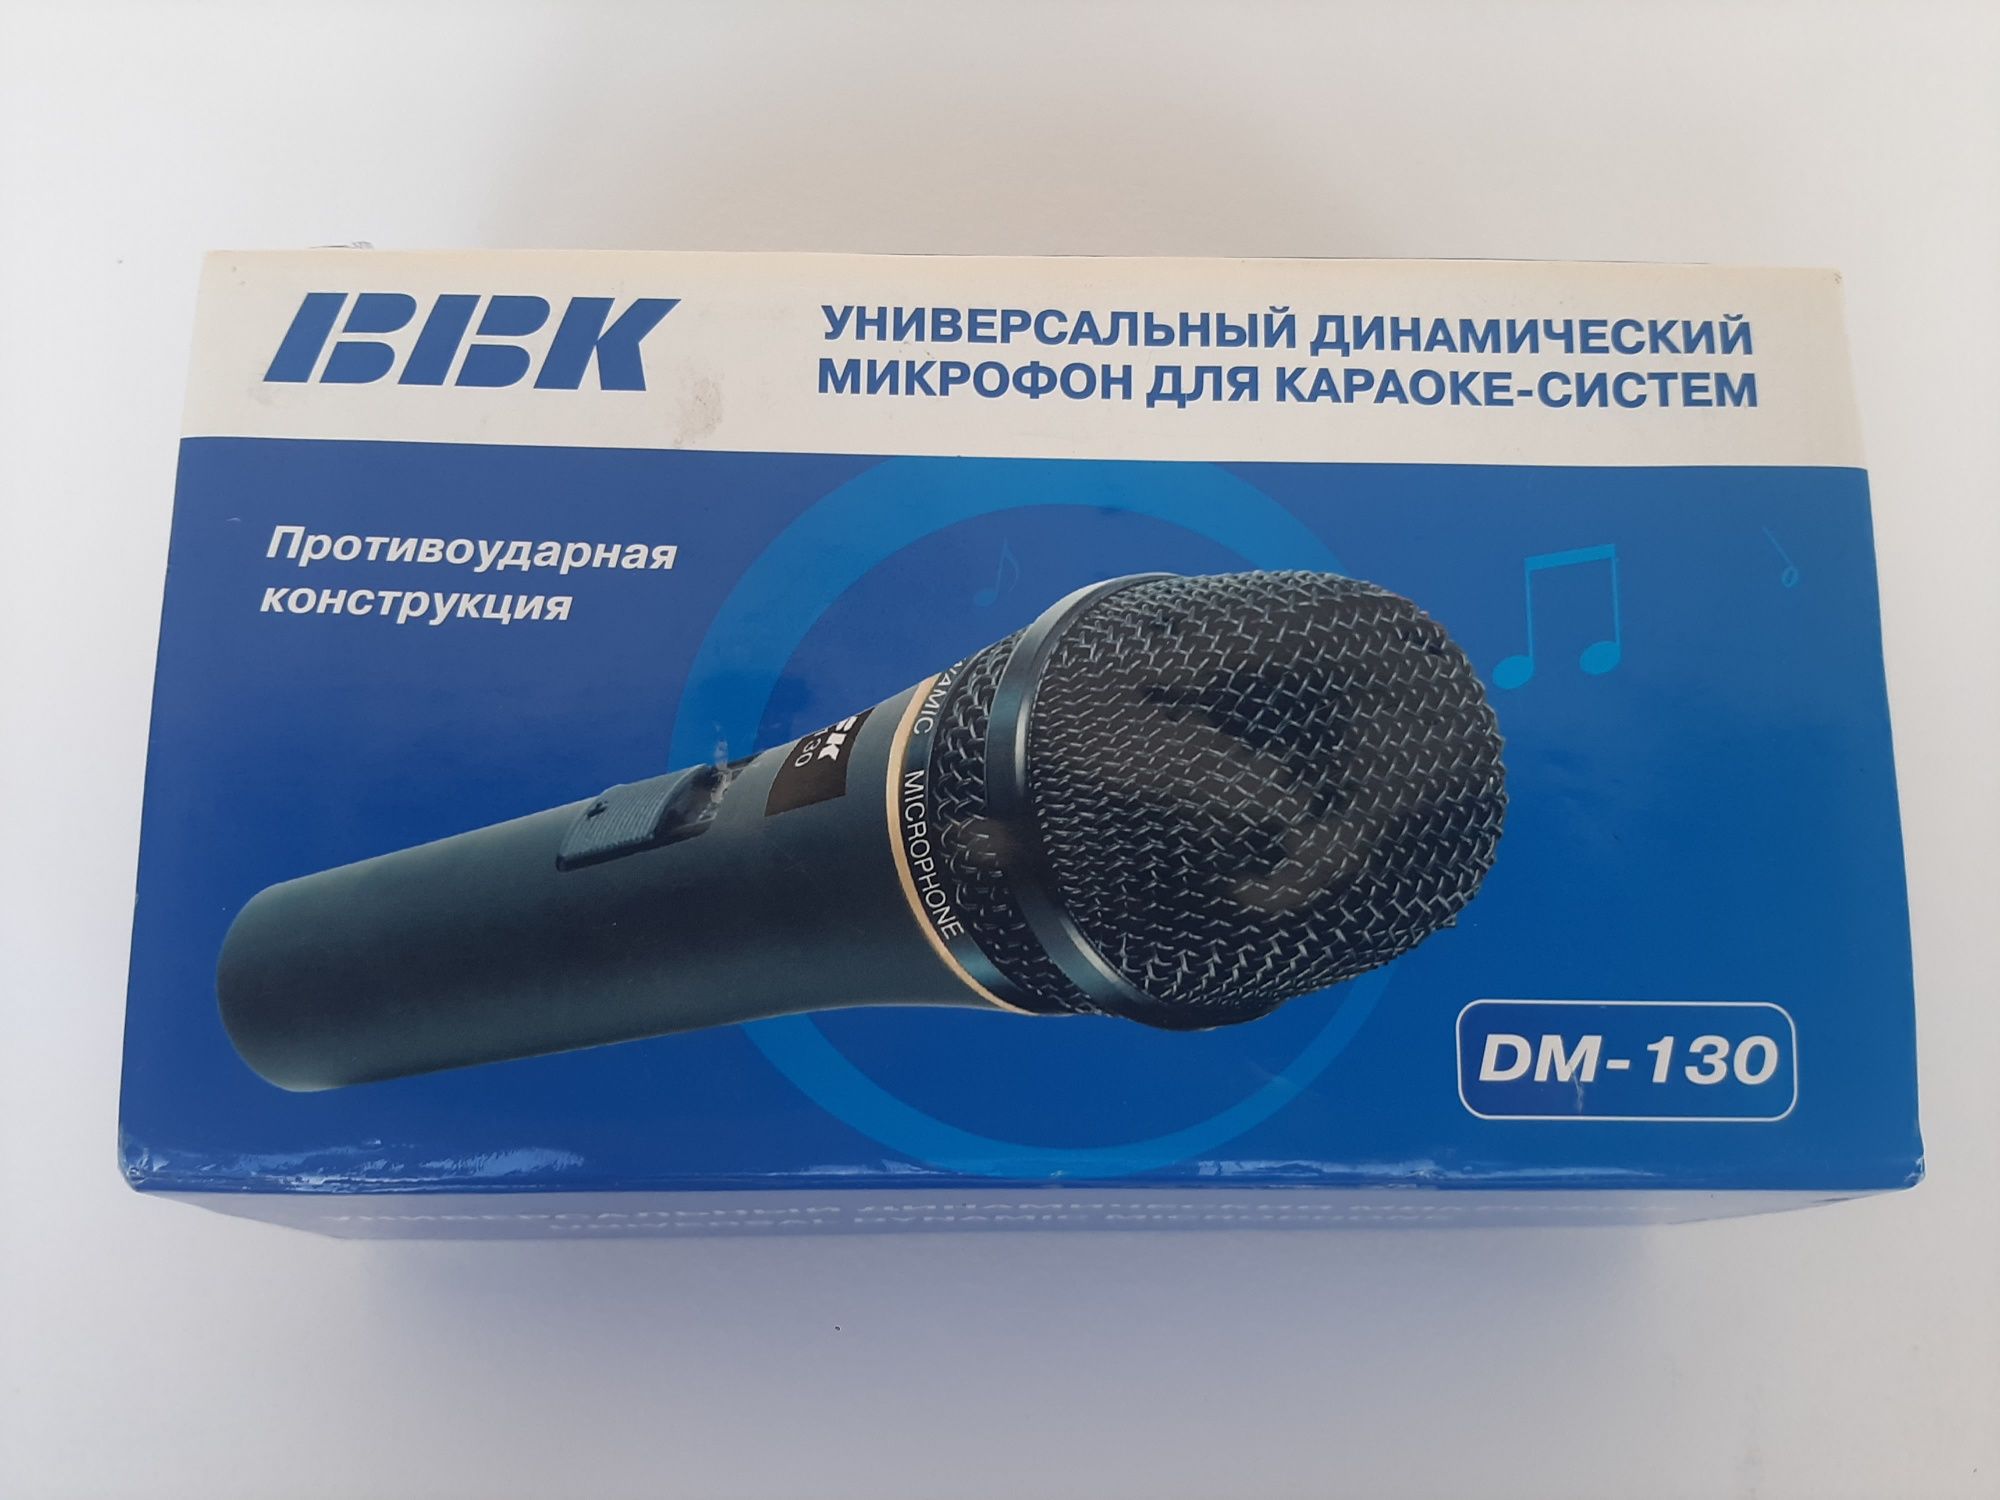 Микрофон BBK новый. Длина провода 4,5 метра